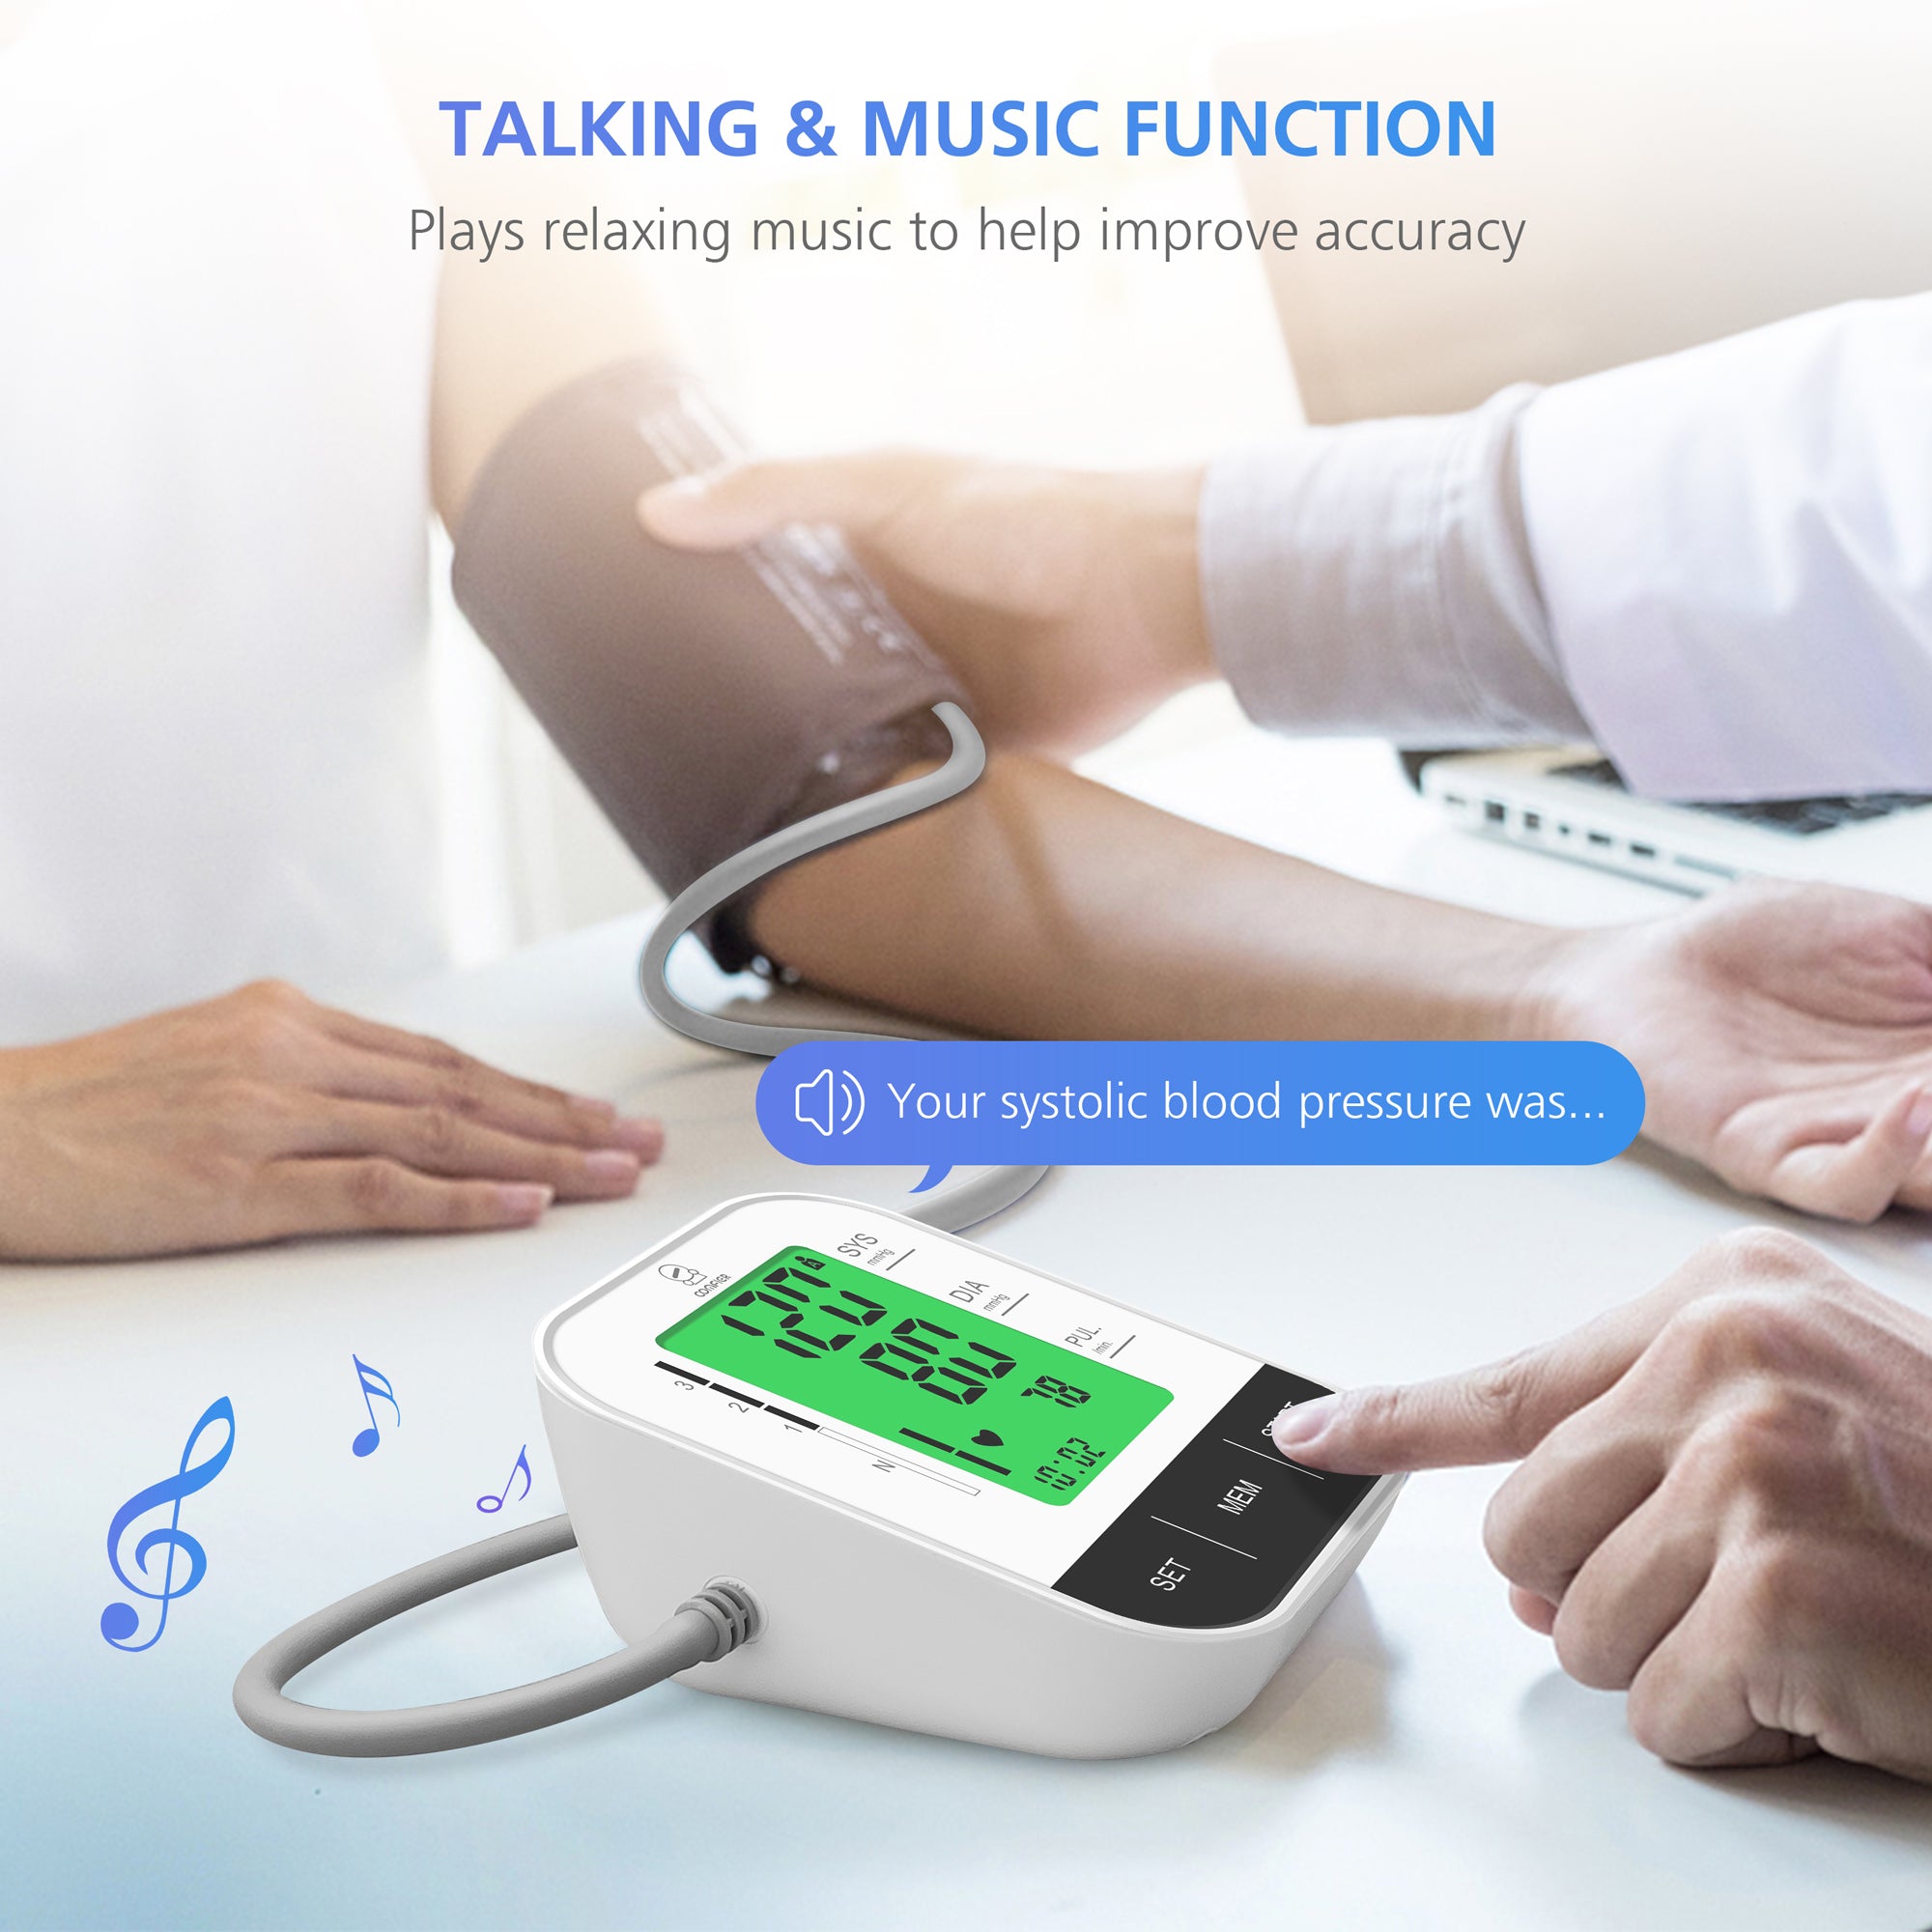 Comfier Arm Blood Pressure Monitor & Blood Pressure Cuff Machine - B15S